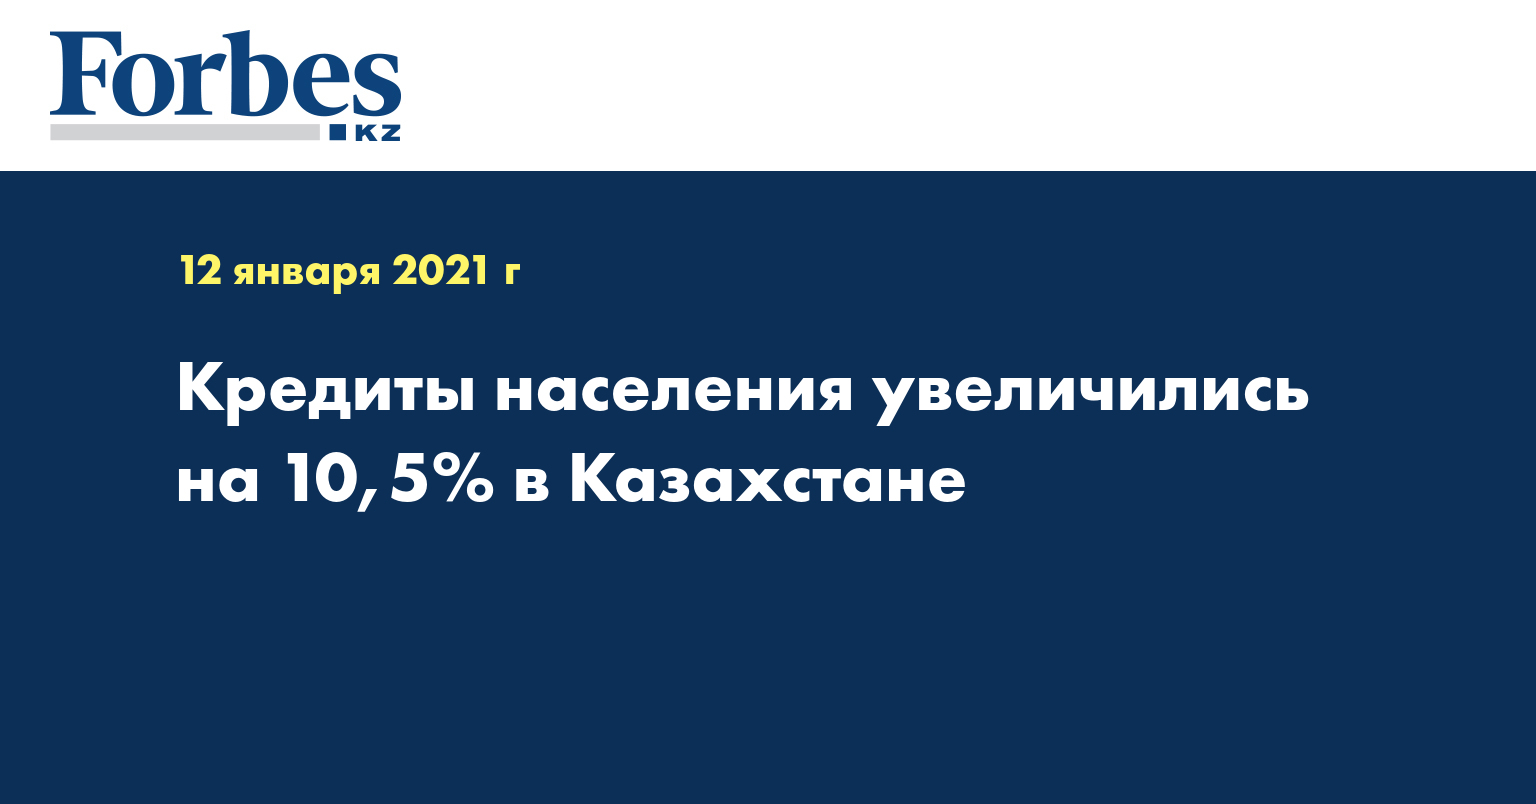 Кредиты населения увеличились на 10,5% в Казахстане